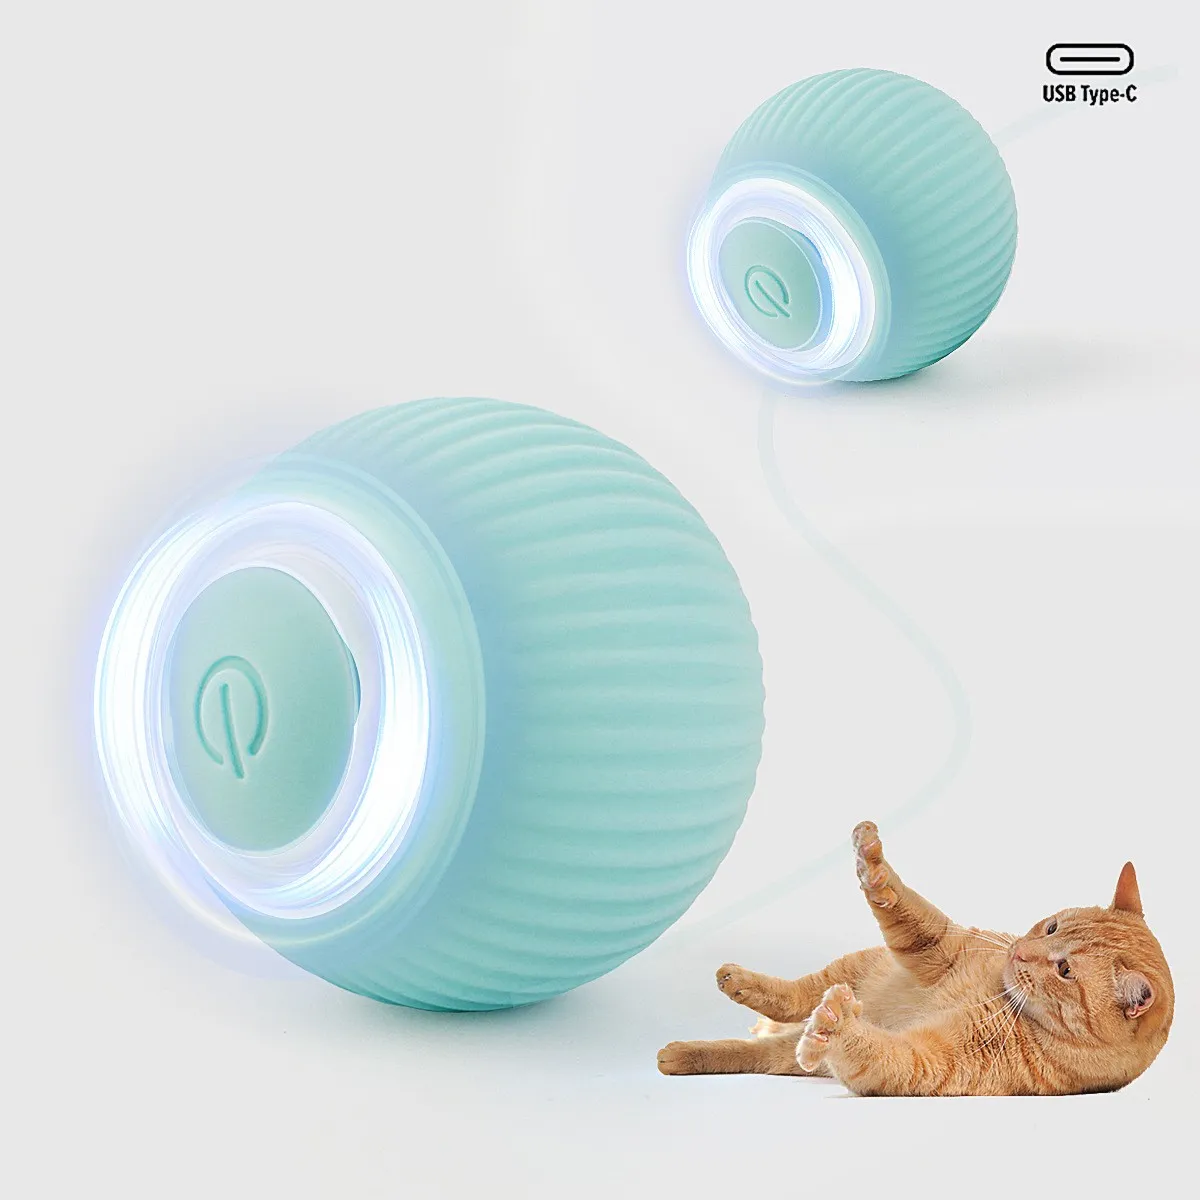 Juguetes inteligentes para gatos, bola rodante automática, juguetes eléctricos para gatos, juguetes interactivos para gatos, juguetes para gatitos automotrices, accesorios para mascotas